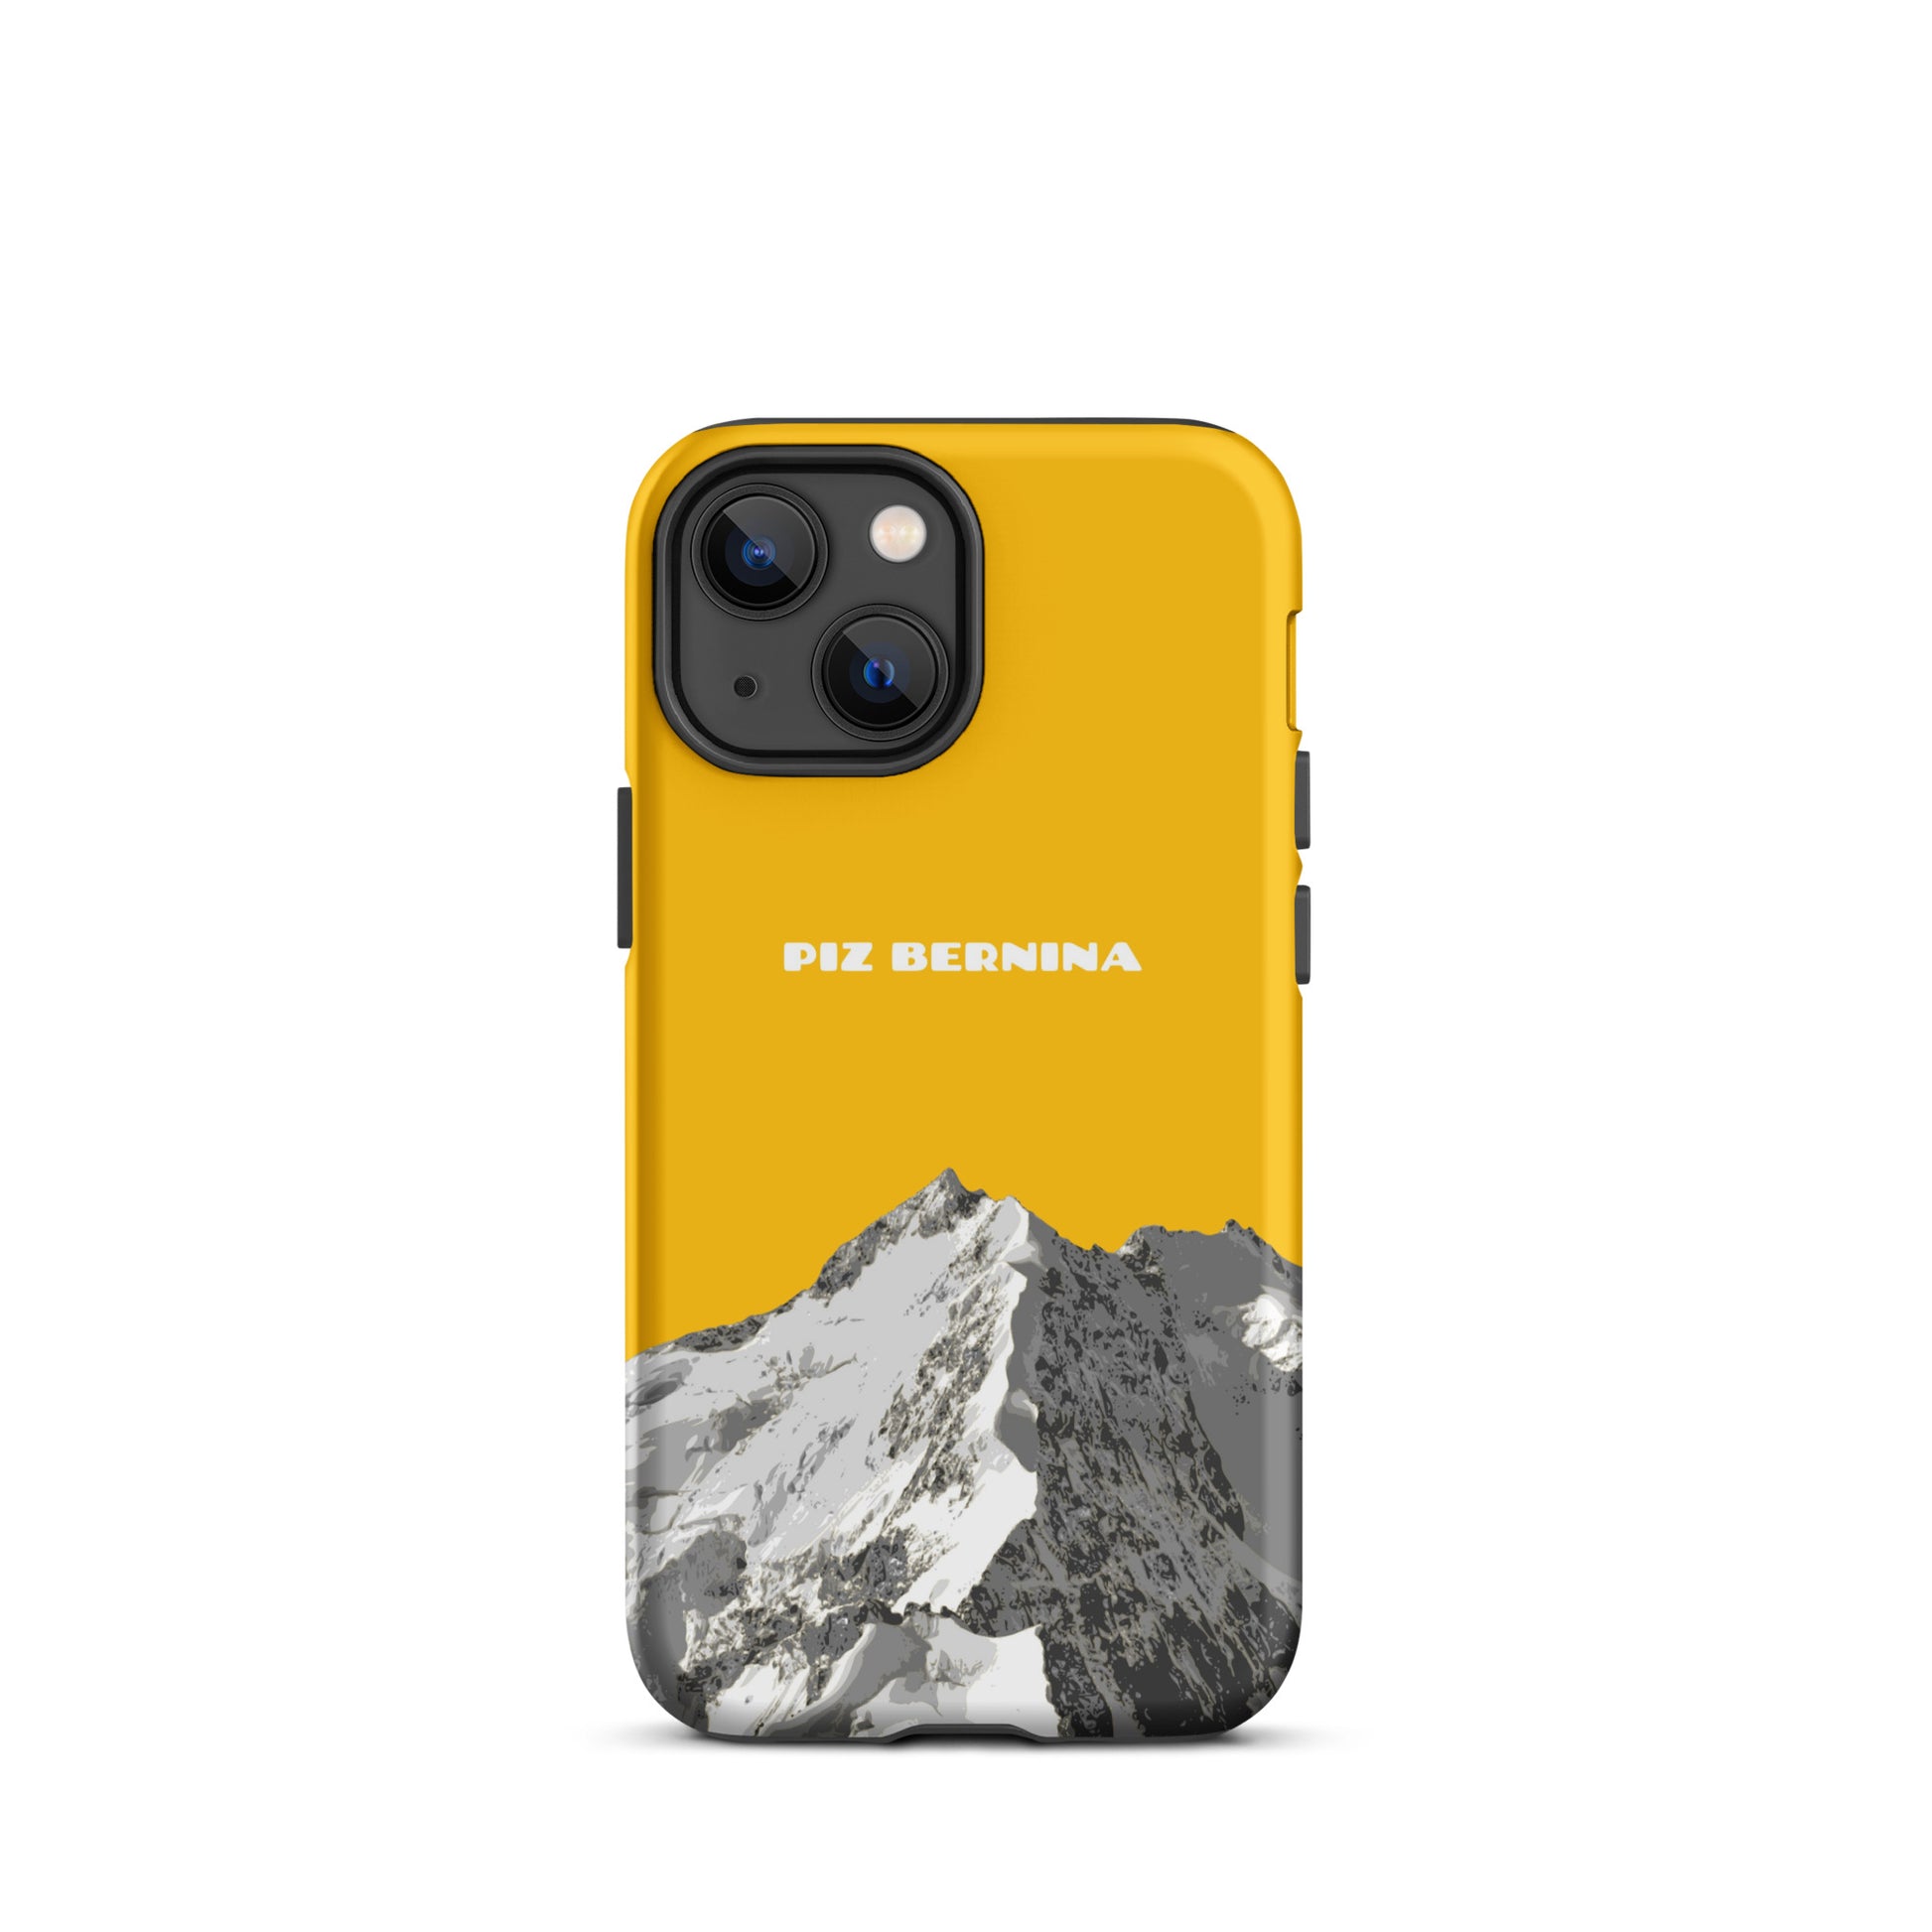 Hülle für das iPhone 13 Mini von Apple in der Farbe Goldgelb, dass den Piz Bernina in Graubünden zeigt.